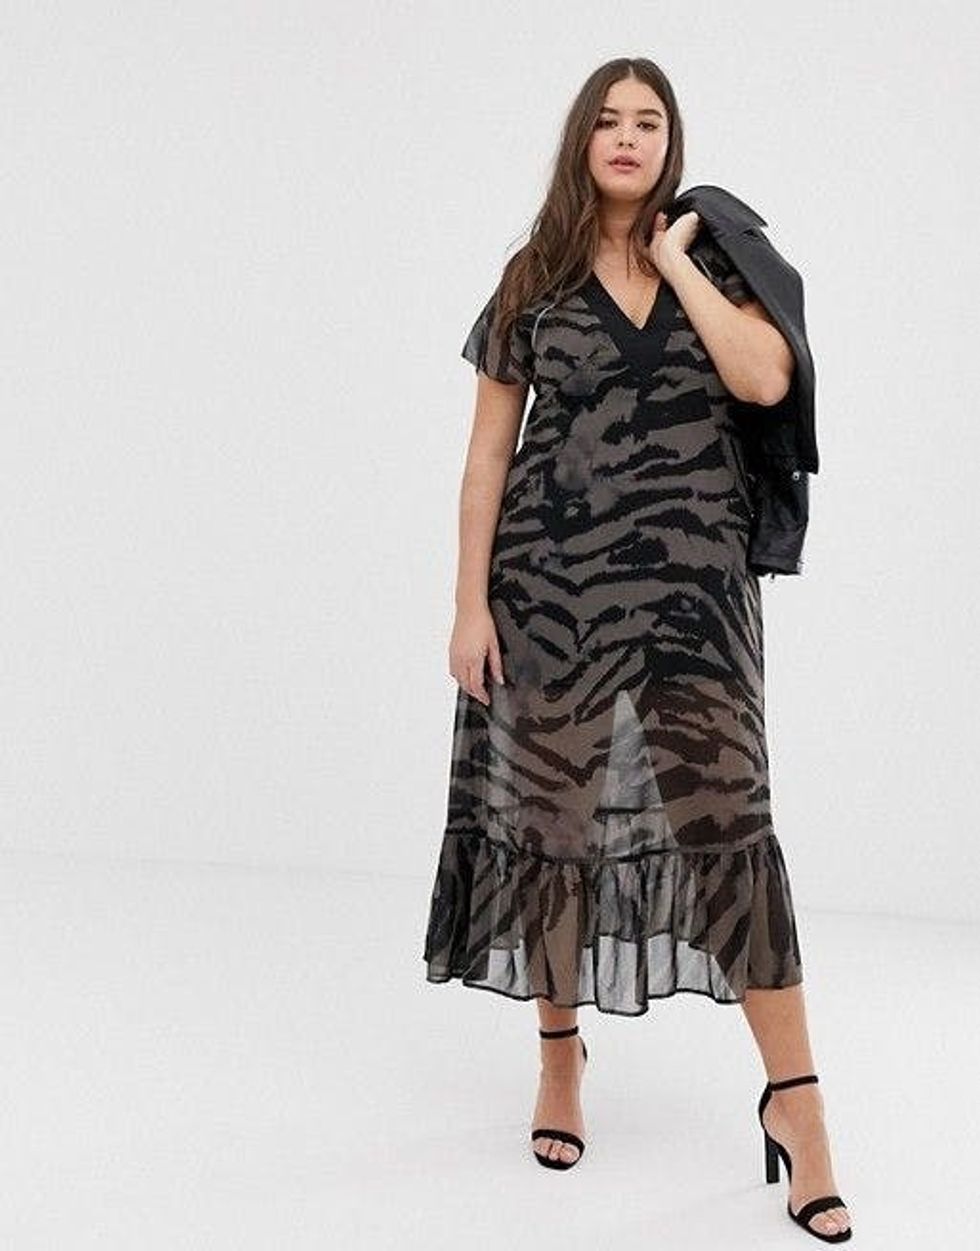 21 Ways to Wild Up Your Wardrobe With Zebra Print - Brit + Co